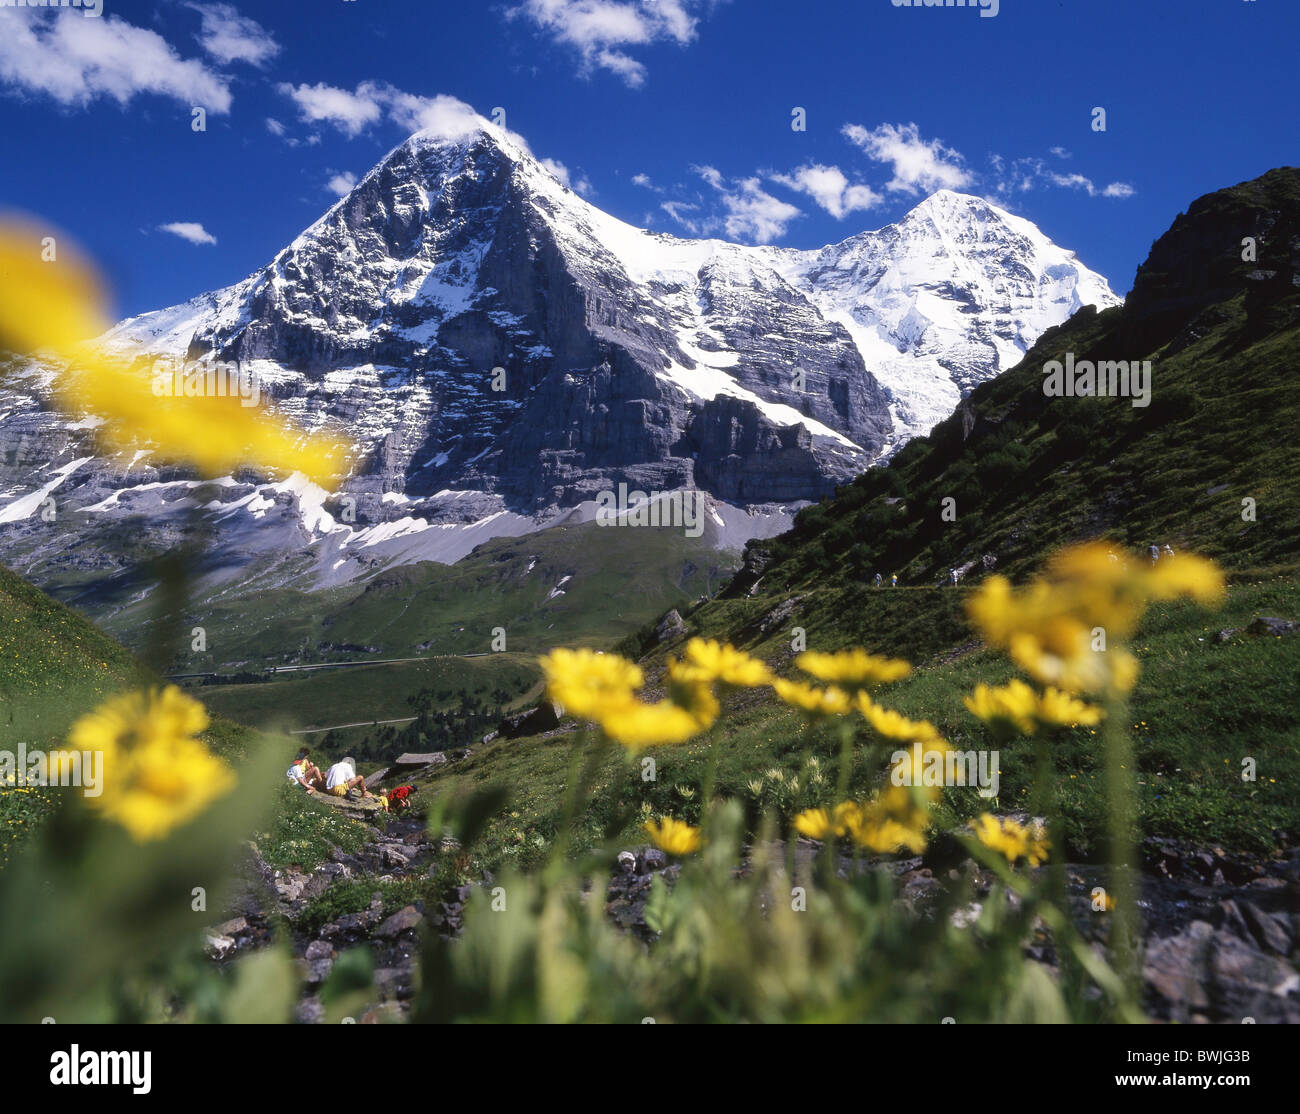 Eiger Monch footpath Mannlichen-Kleine Scheidegg hiking flowers brook stream mountains Alps scenery landsca Stock Photo